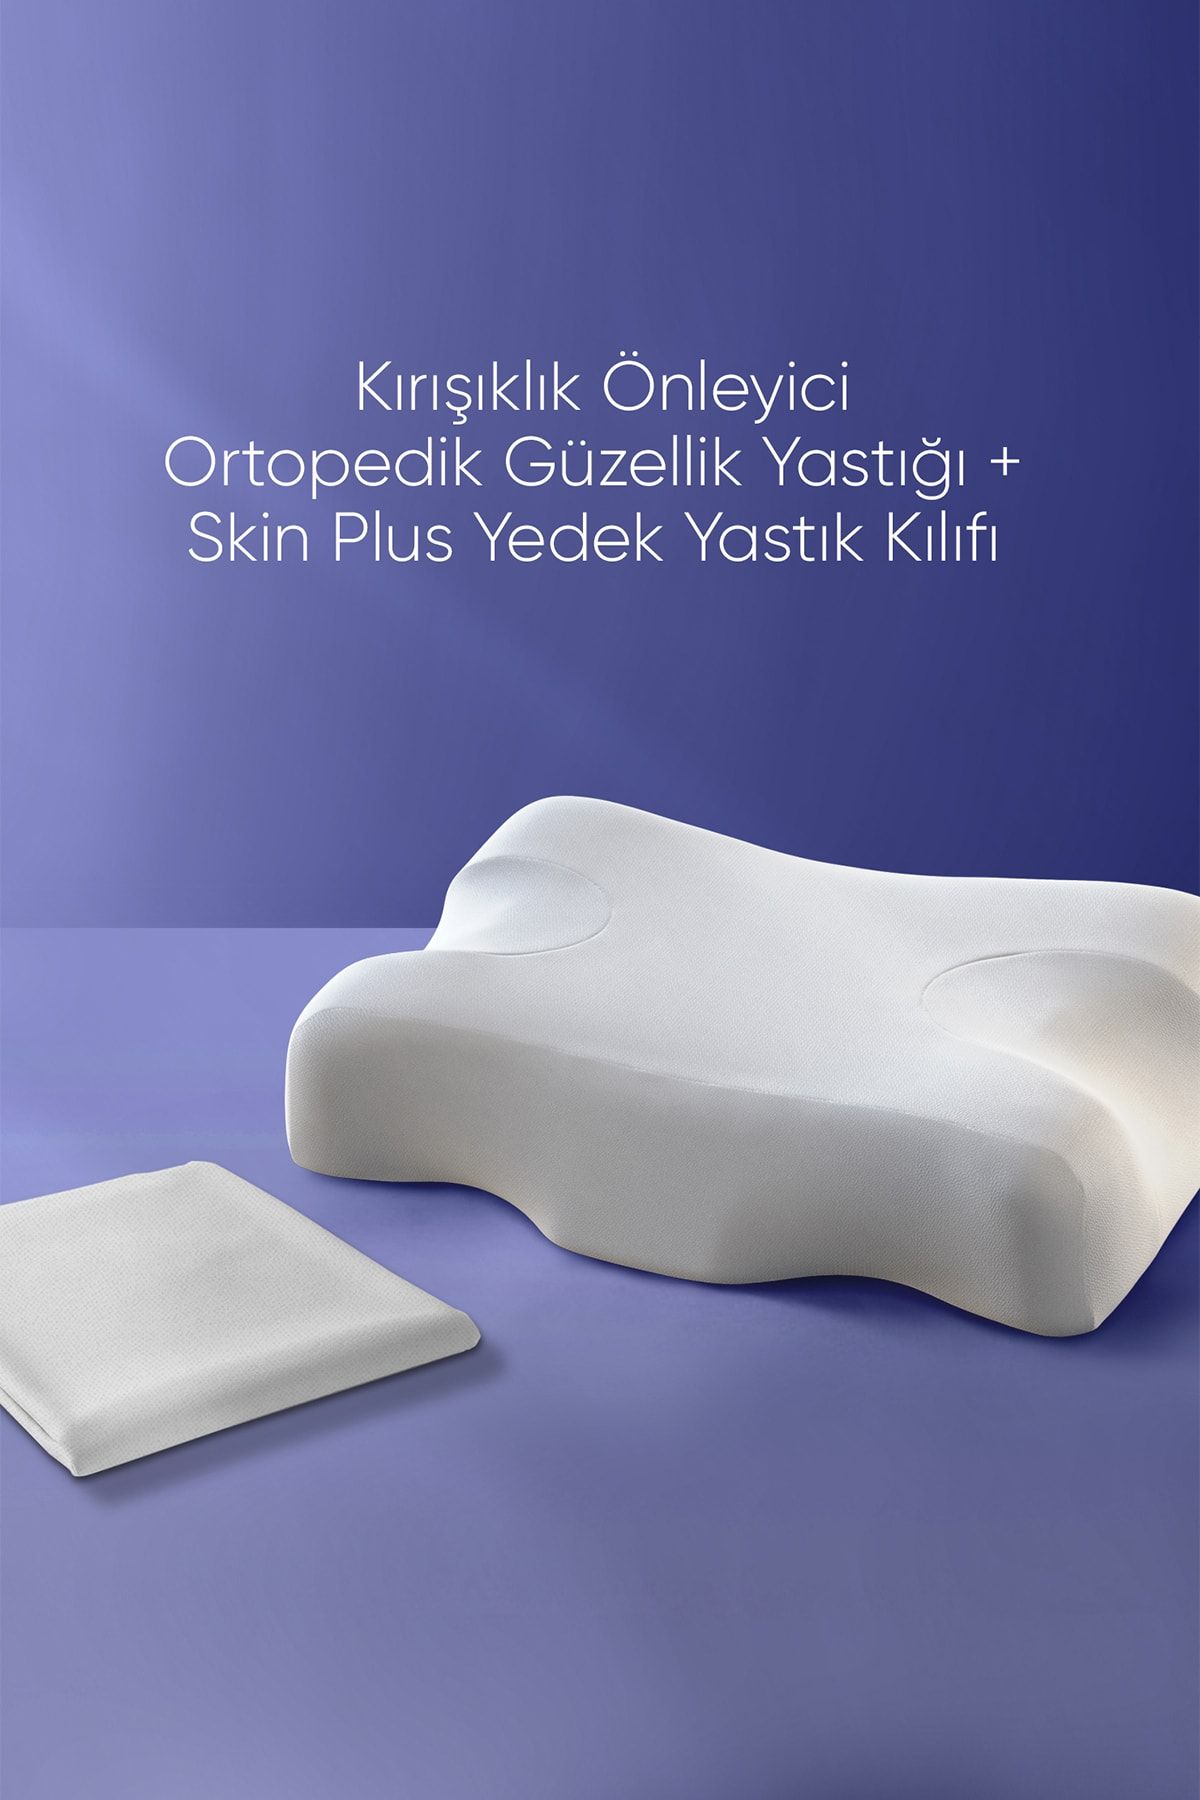 Beauty Pillow Kırışıklık Önleyici Ortopedik Güzellik Yastığı + Skinplus Yedek Yastık Kılıfı